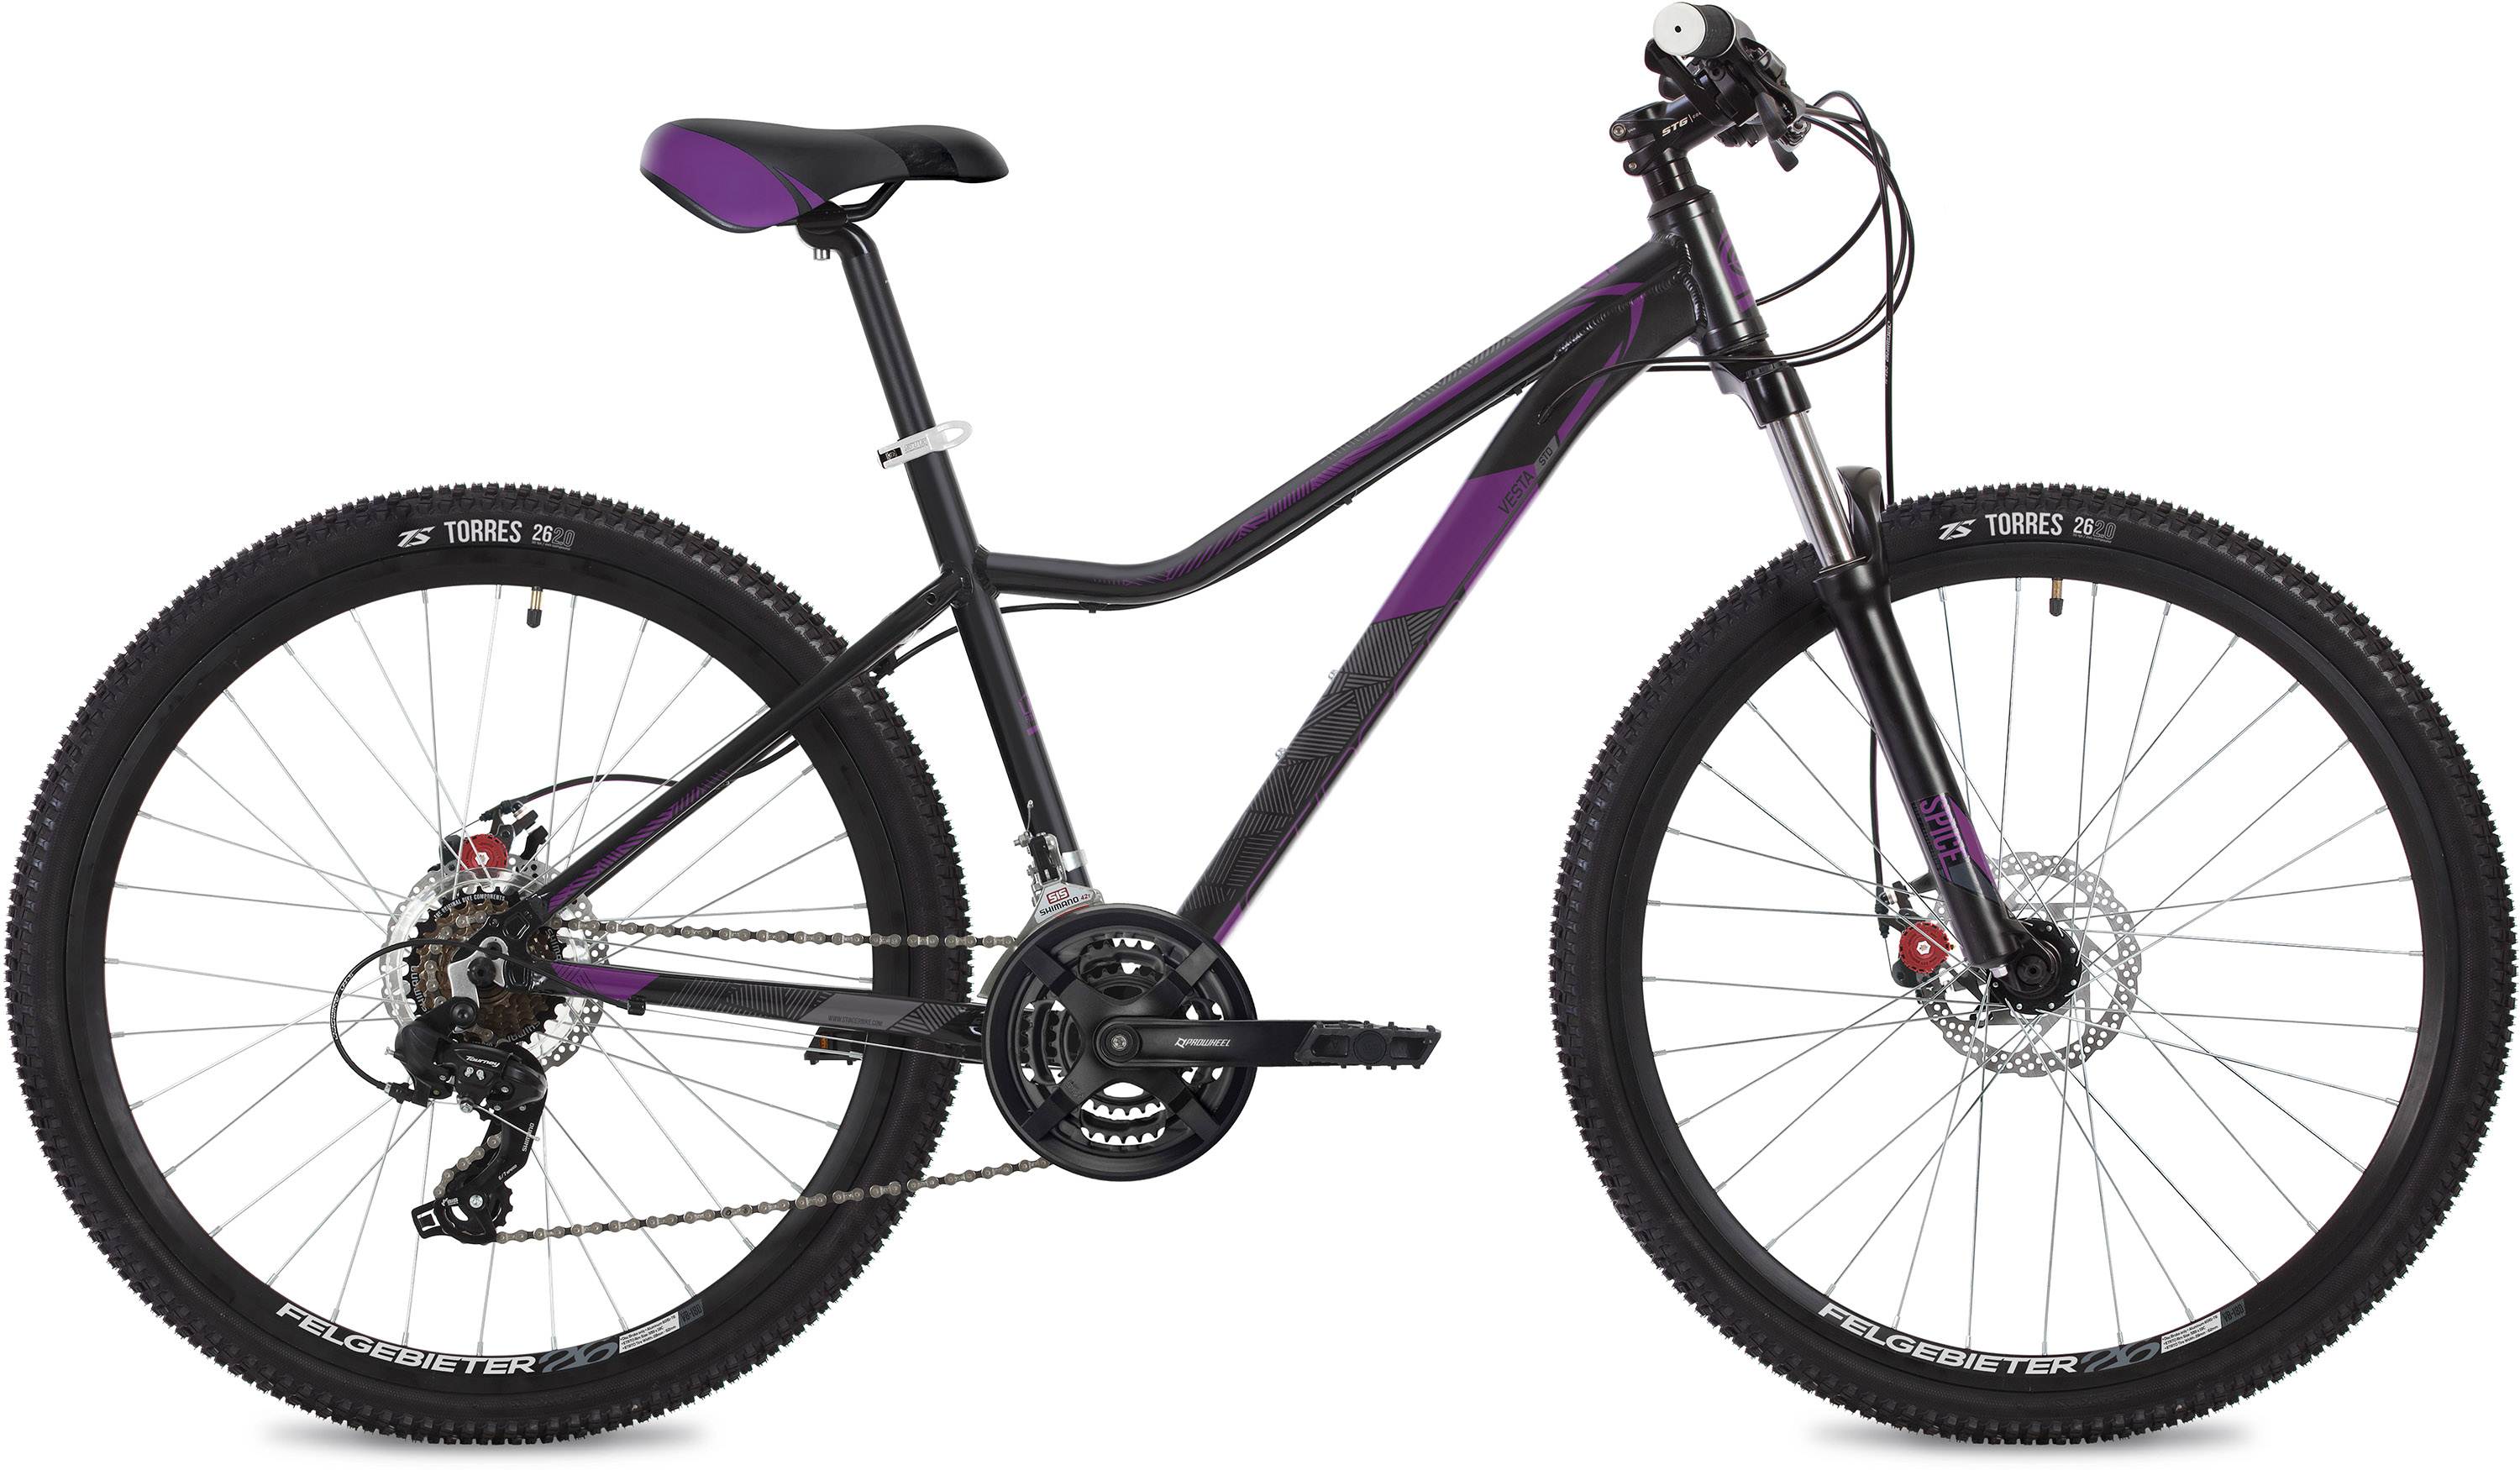  Отзывы о Женском велосипеде Stinger Vesta STD 26 2020